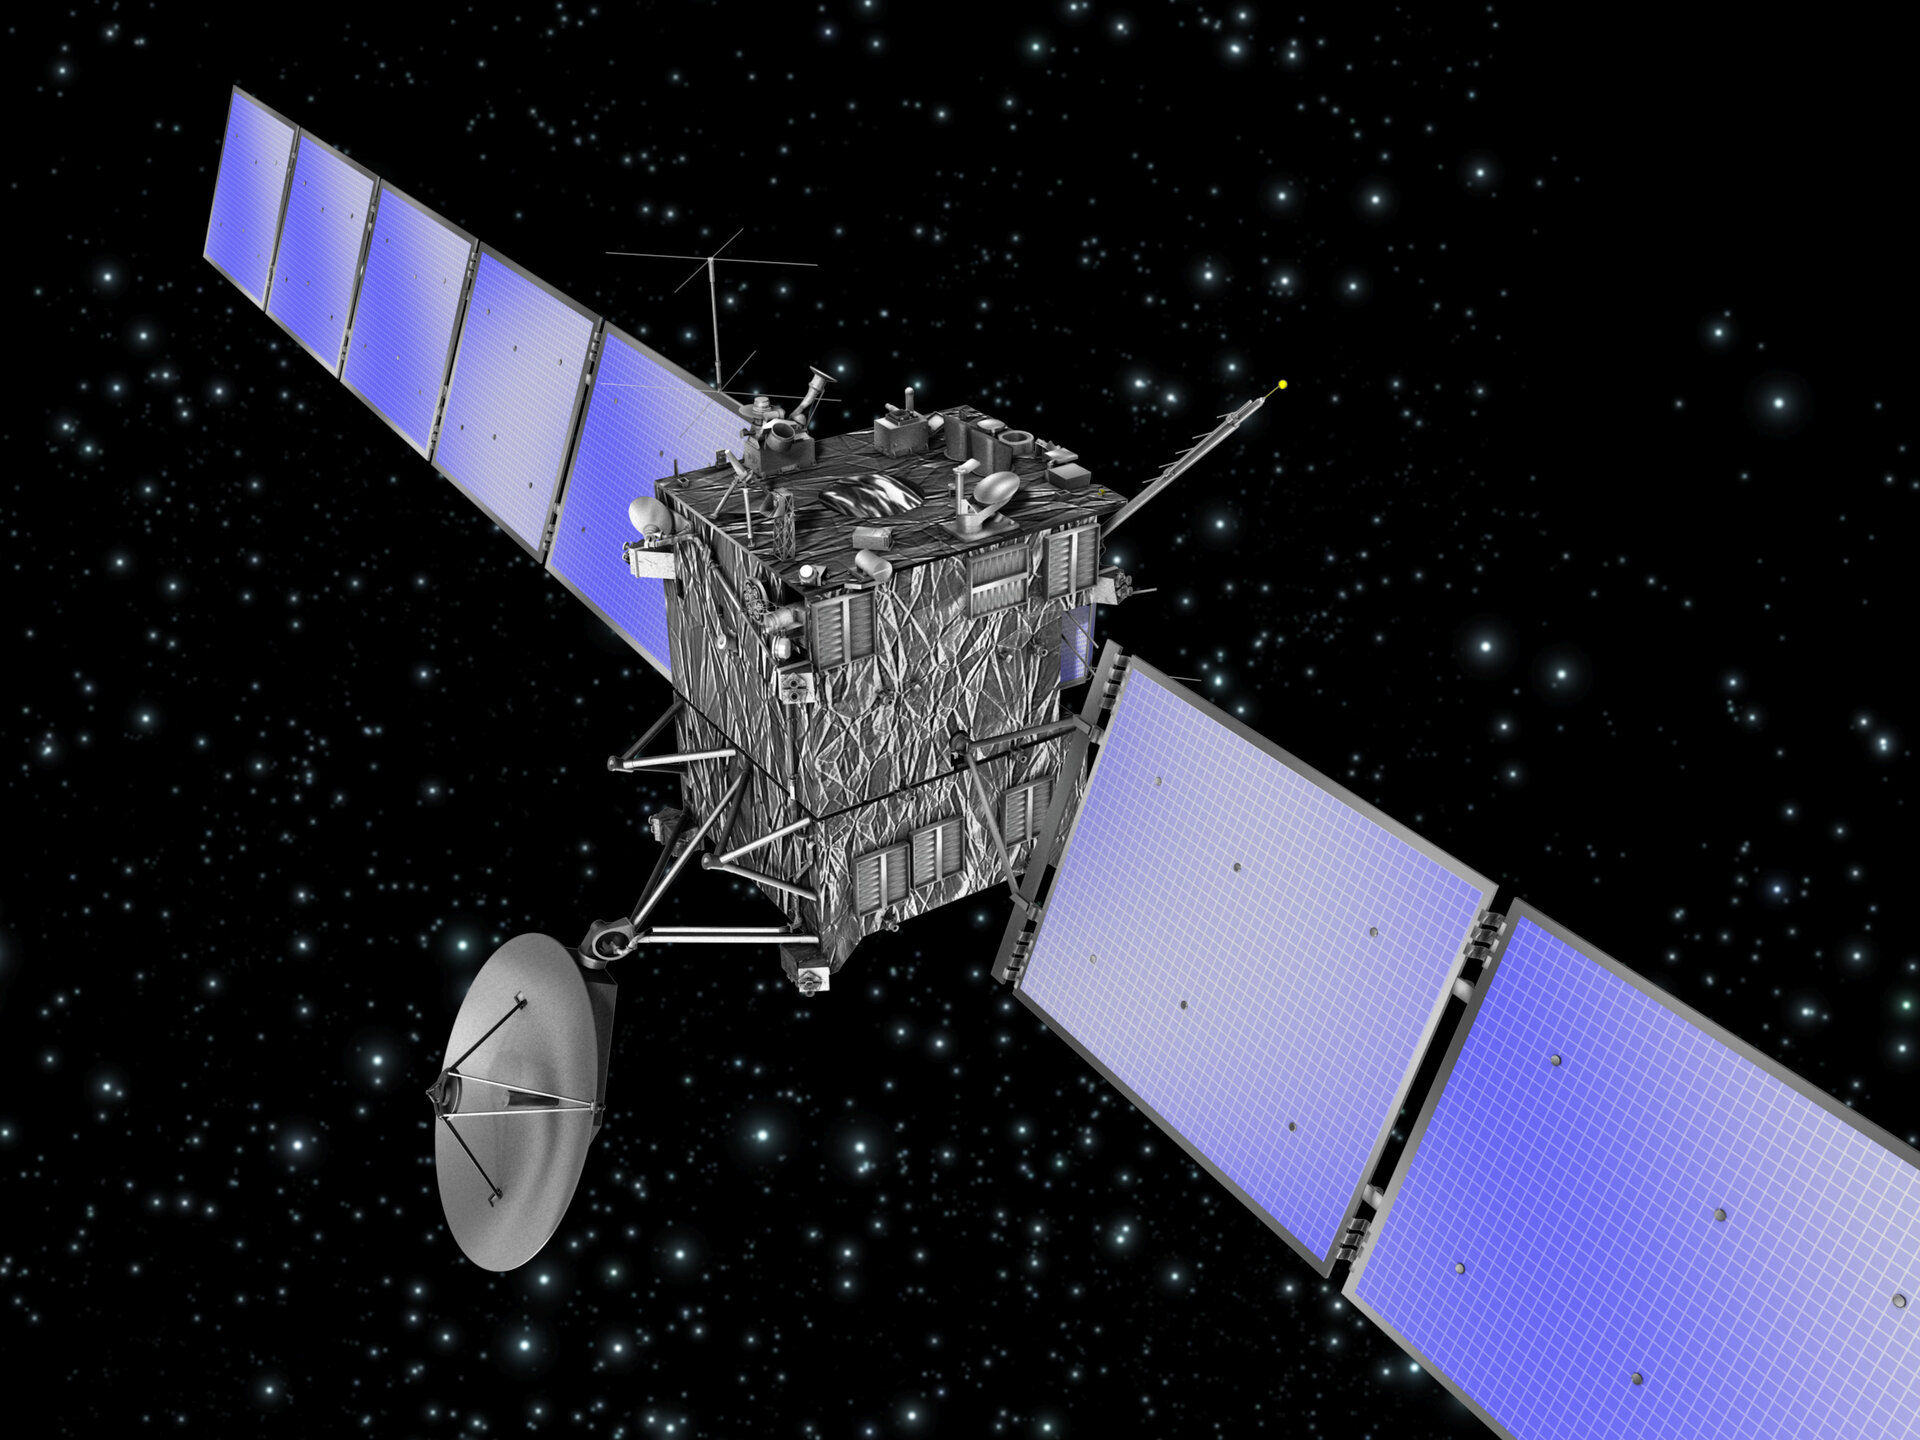 La sonda Rosetta dell'ESA